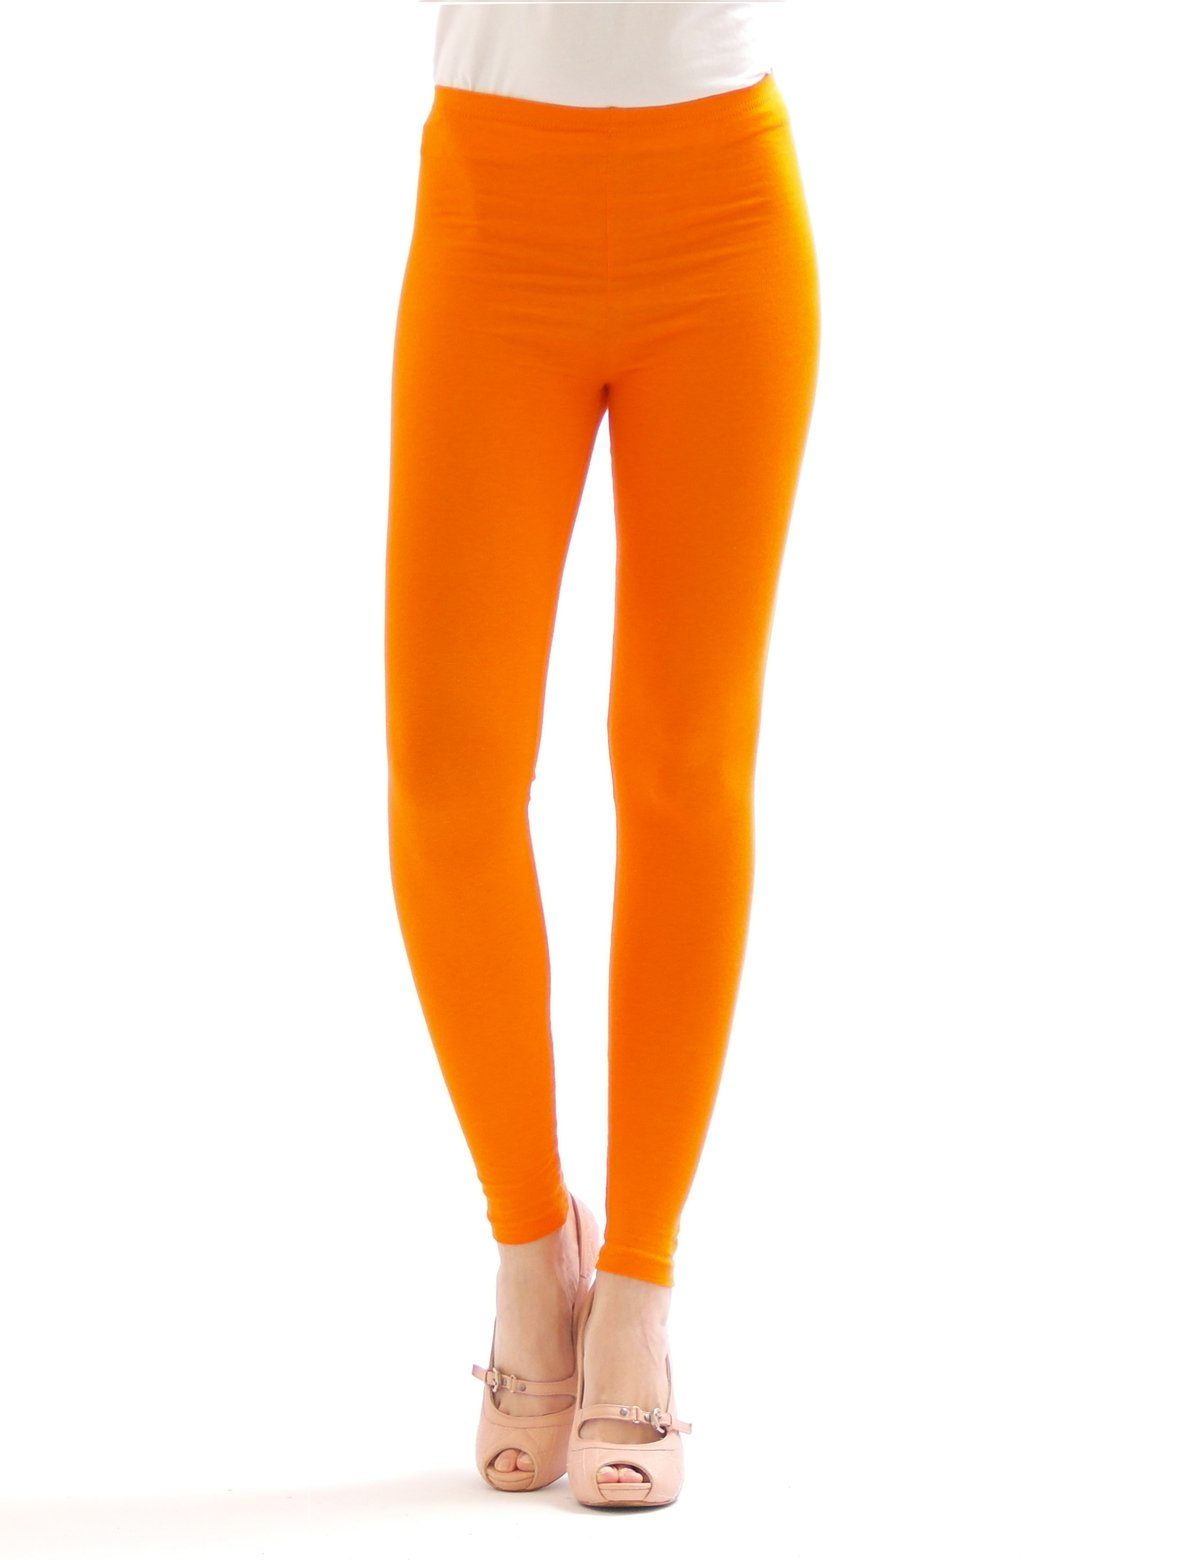 SYS Leggings Damen lange Baumwolle lang Wäsche Hauteng Hose orange Leggings